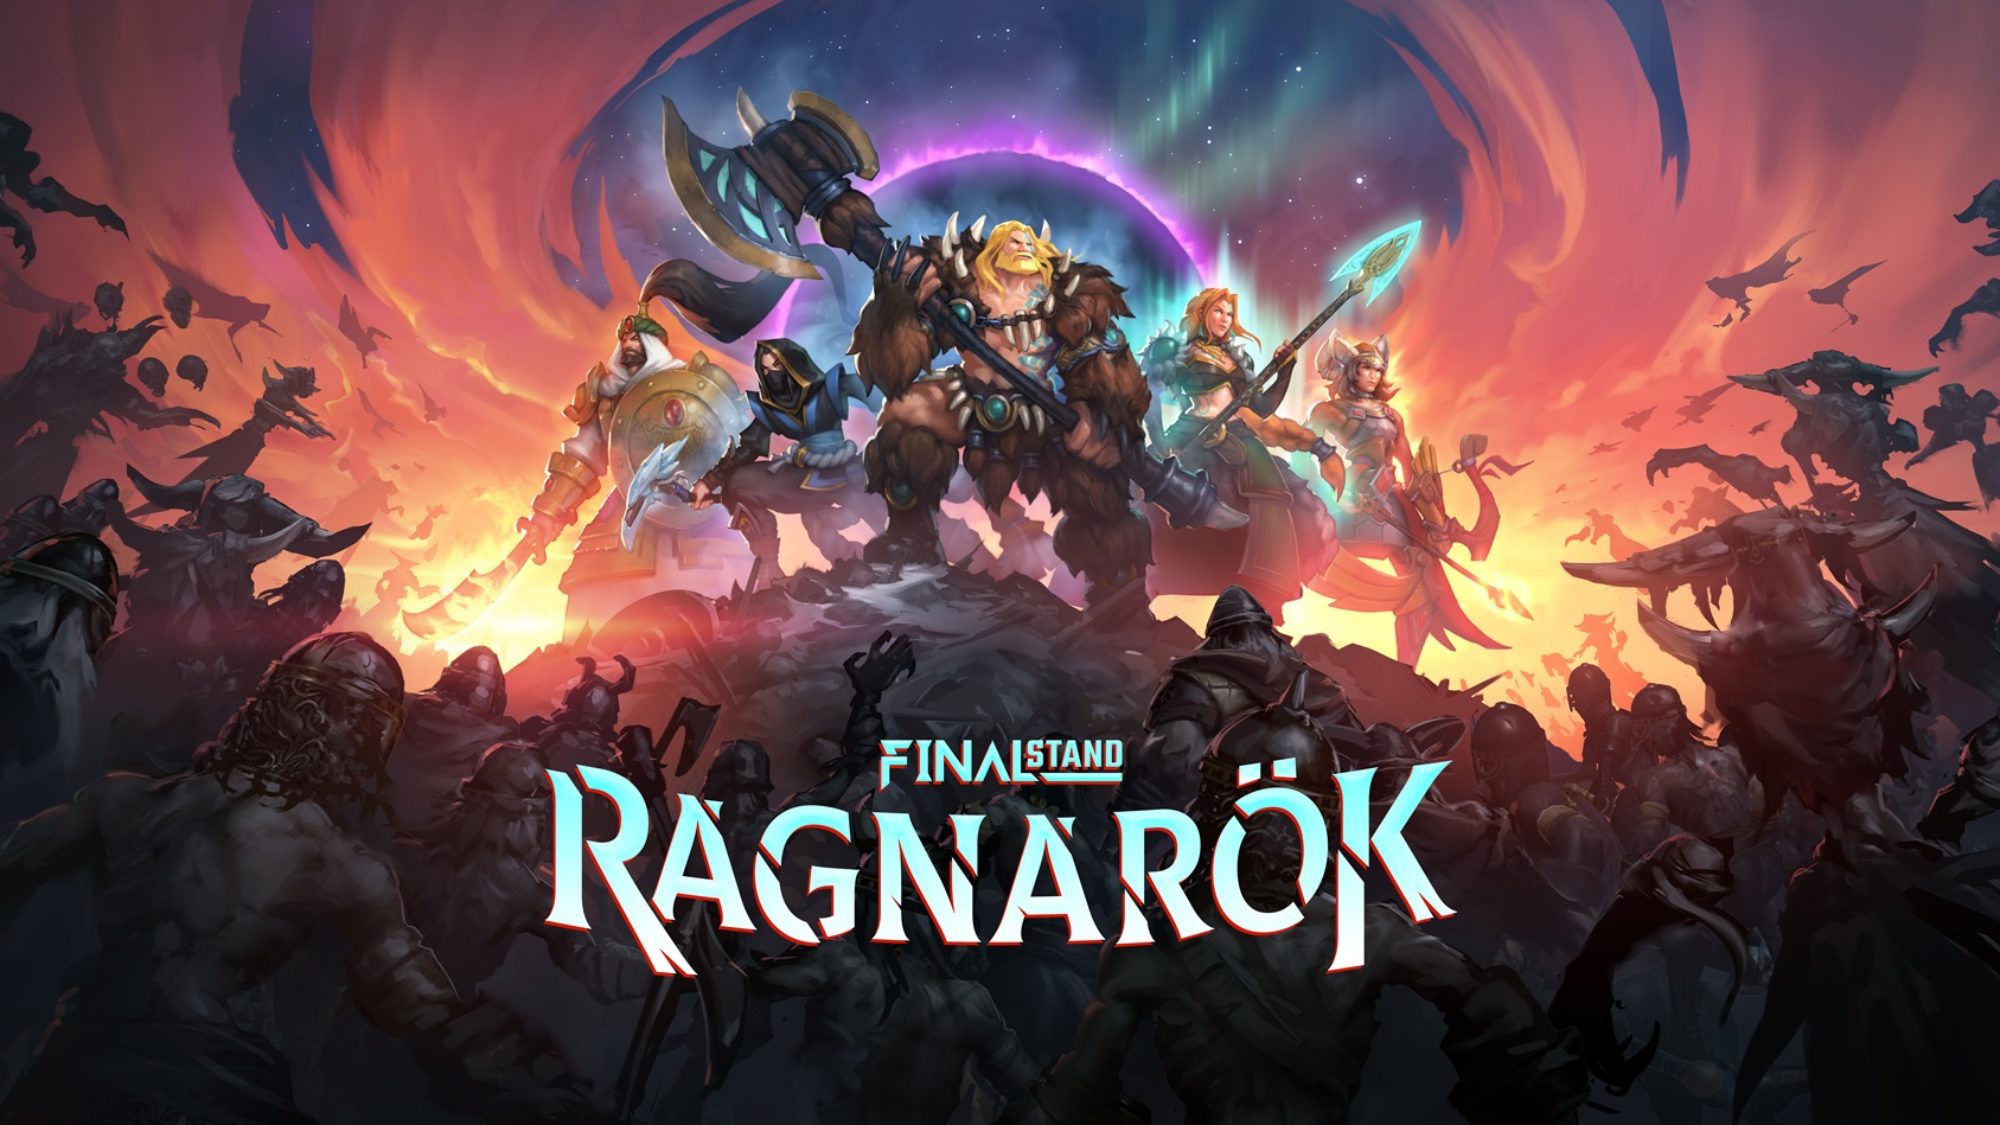 Final Stand: Ragnarök